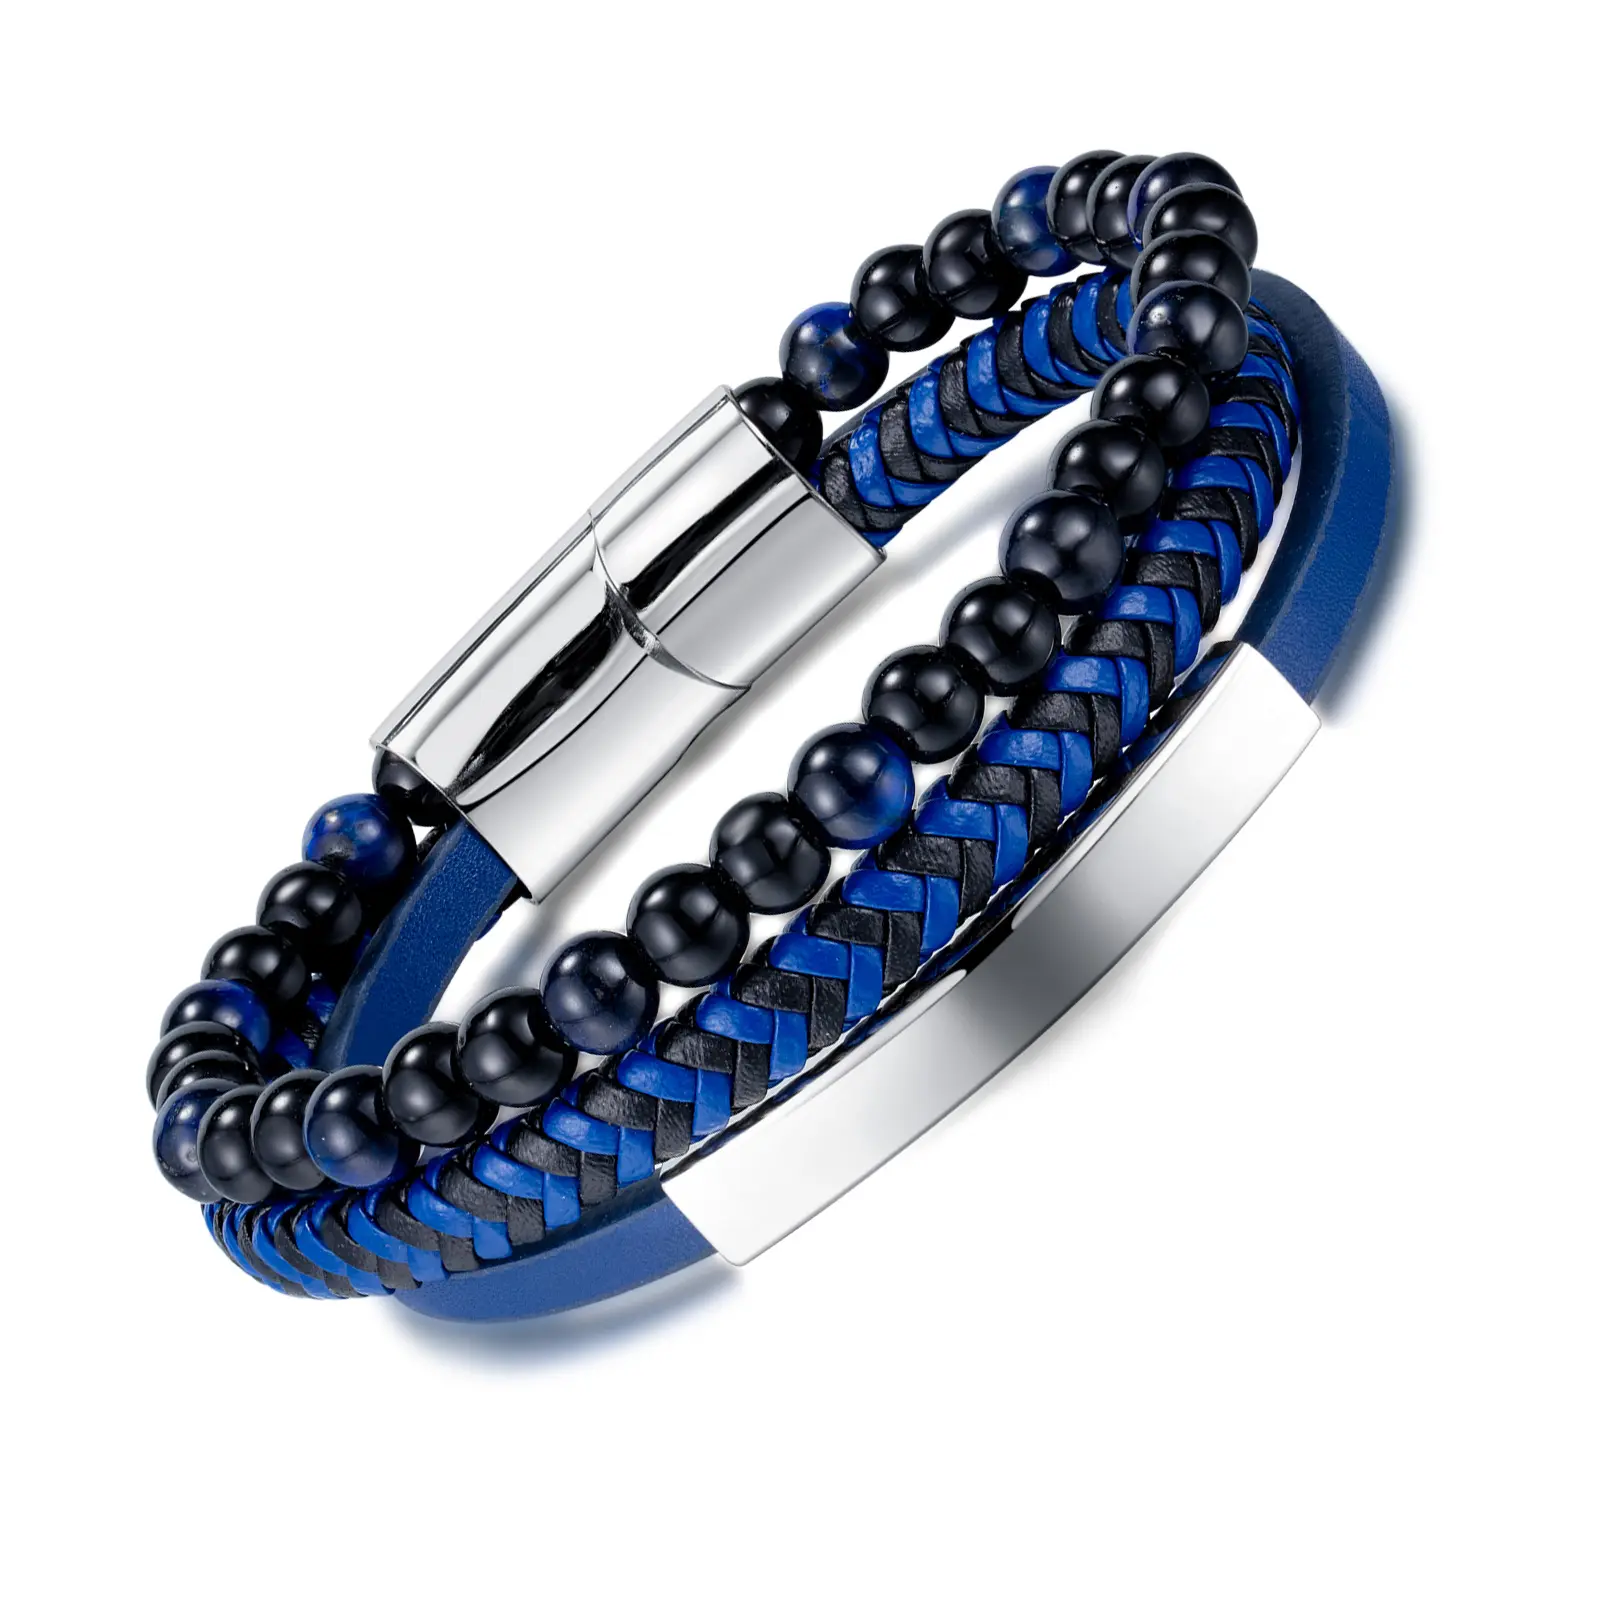 Ustom-pulsera de cuero de acero inoxidable para hombre, brazalete con logo callejero, estilo hip hop azul tejido con piedra de cristal negra